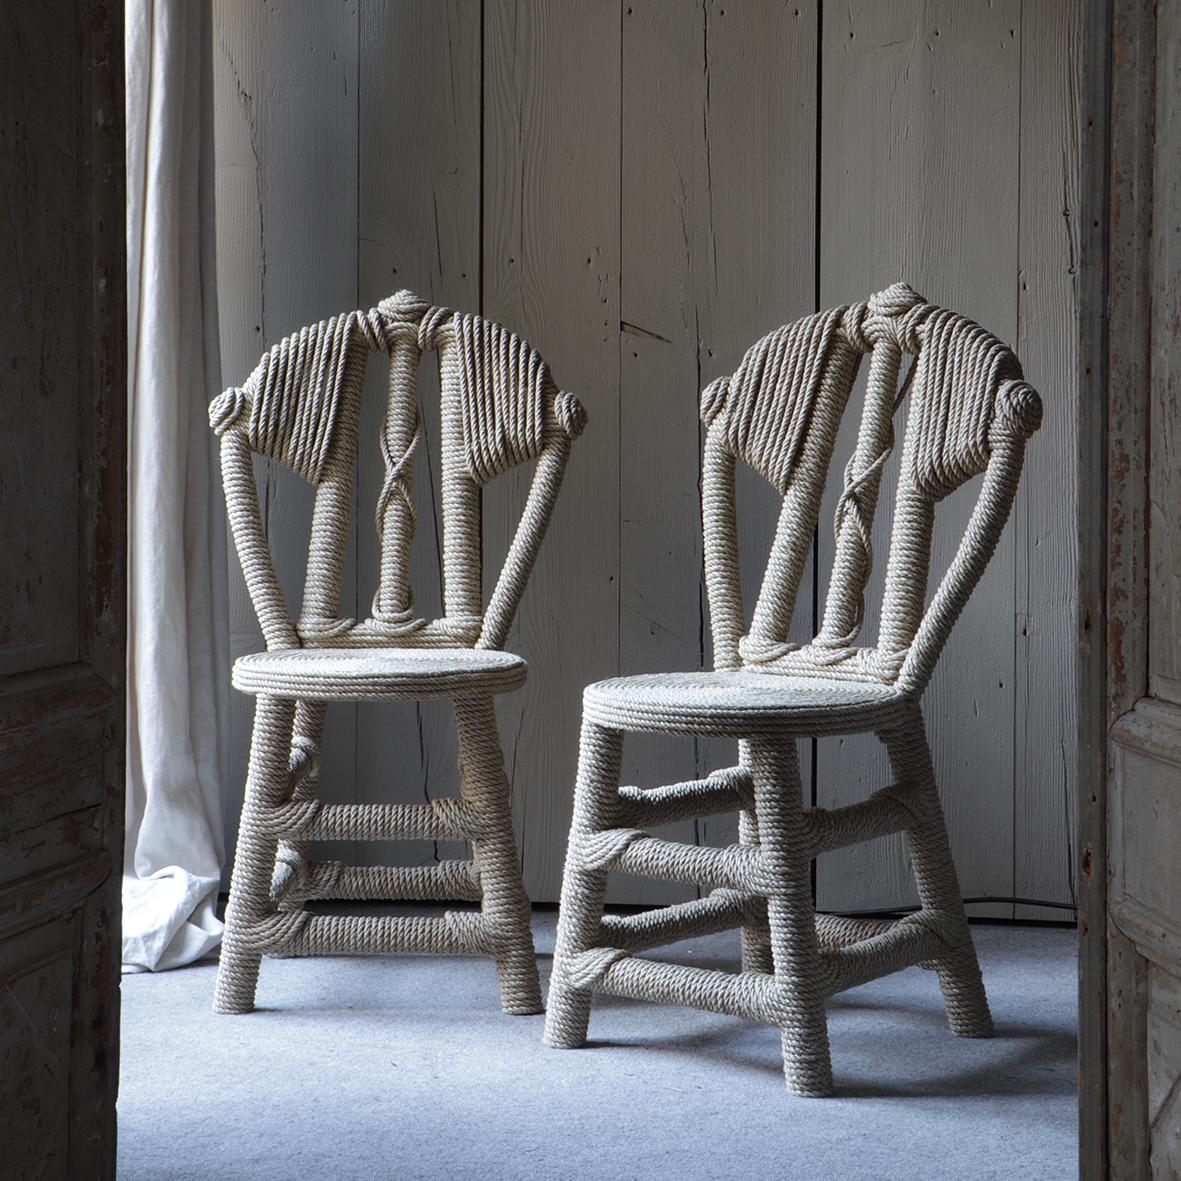 Dieser von Christian Astuguevieille entworfene Stuhl ist aus Hanfseil auf einer Struktur aus Kastanienholz gefertigt.

Christian Astuguevieille ist ein vielseitiger Künstler, Designer und Gestalter. Er experimentiert mit Texturen, Formen und